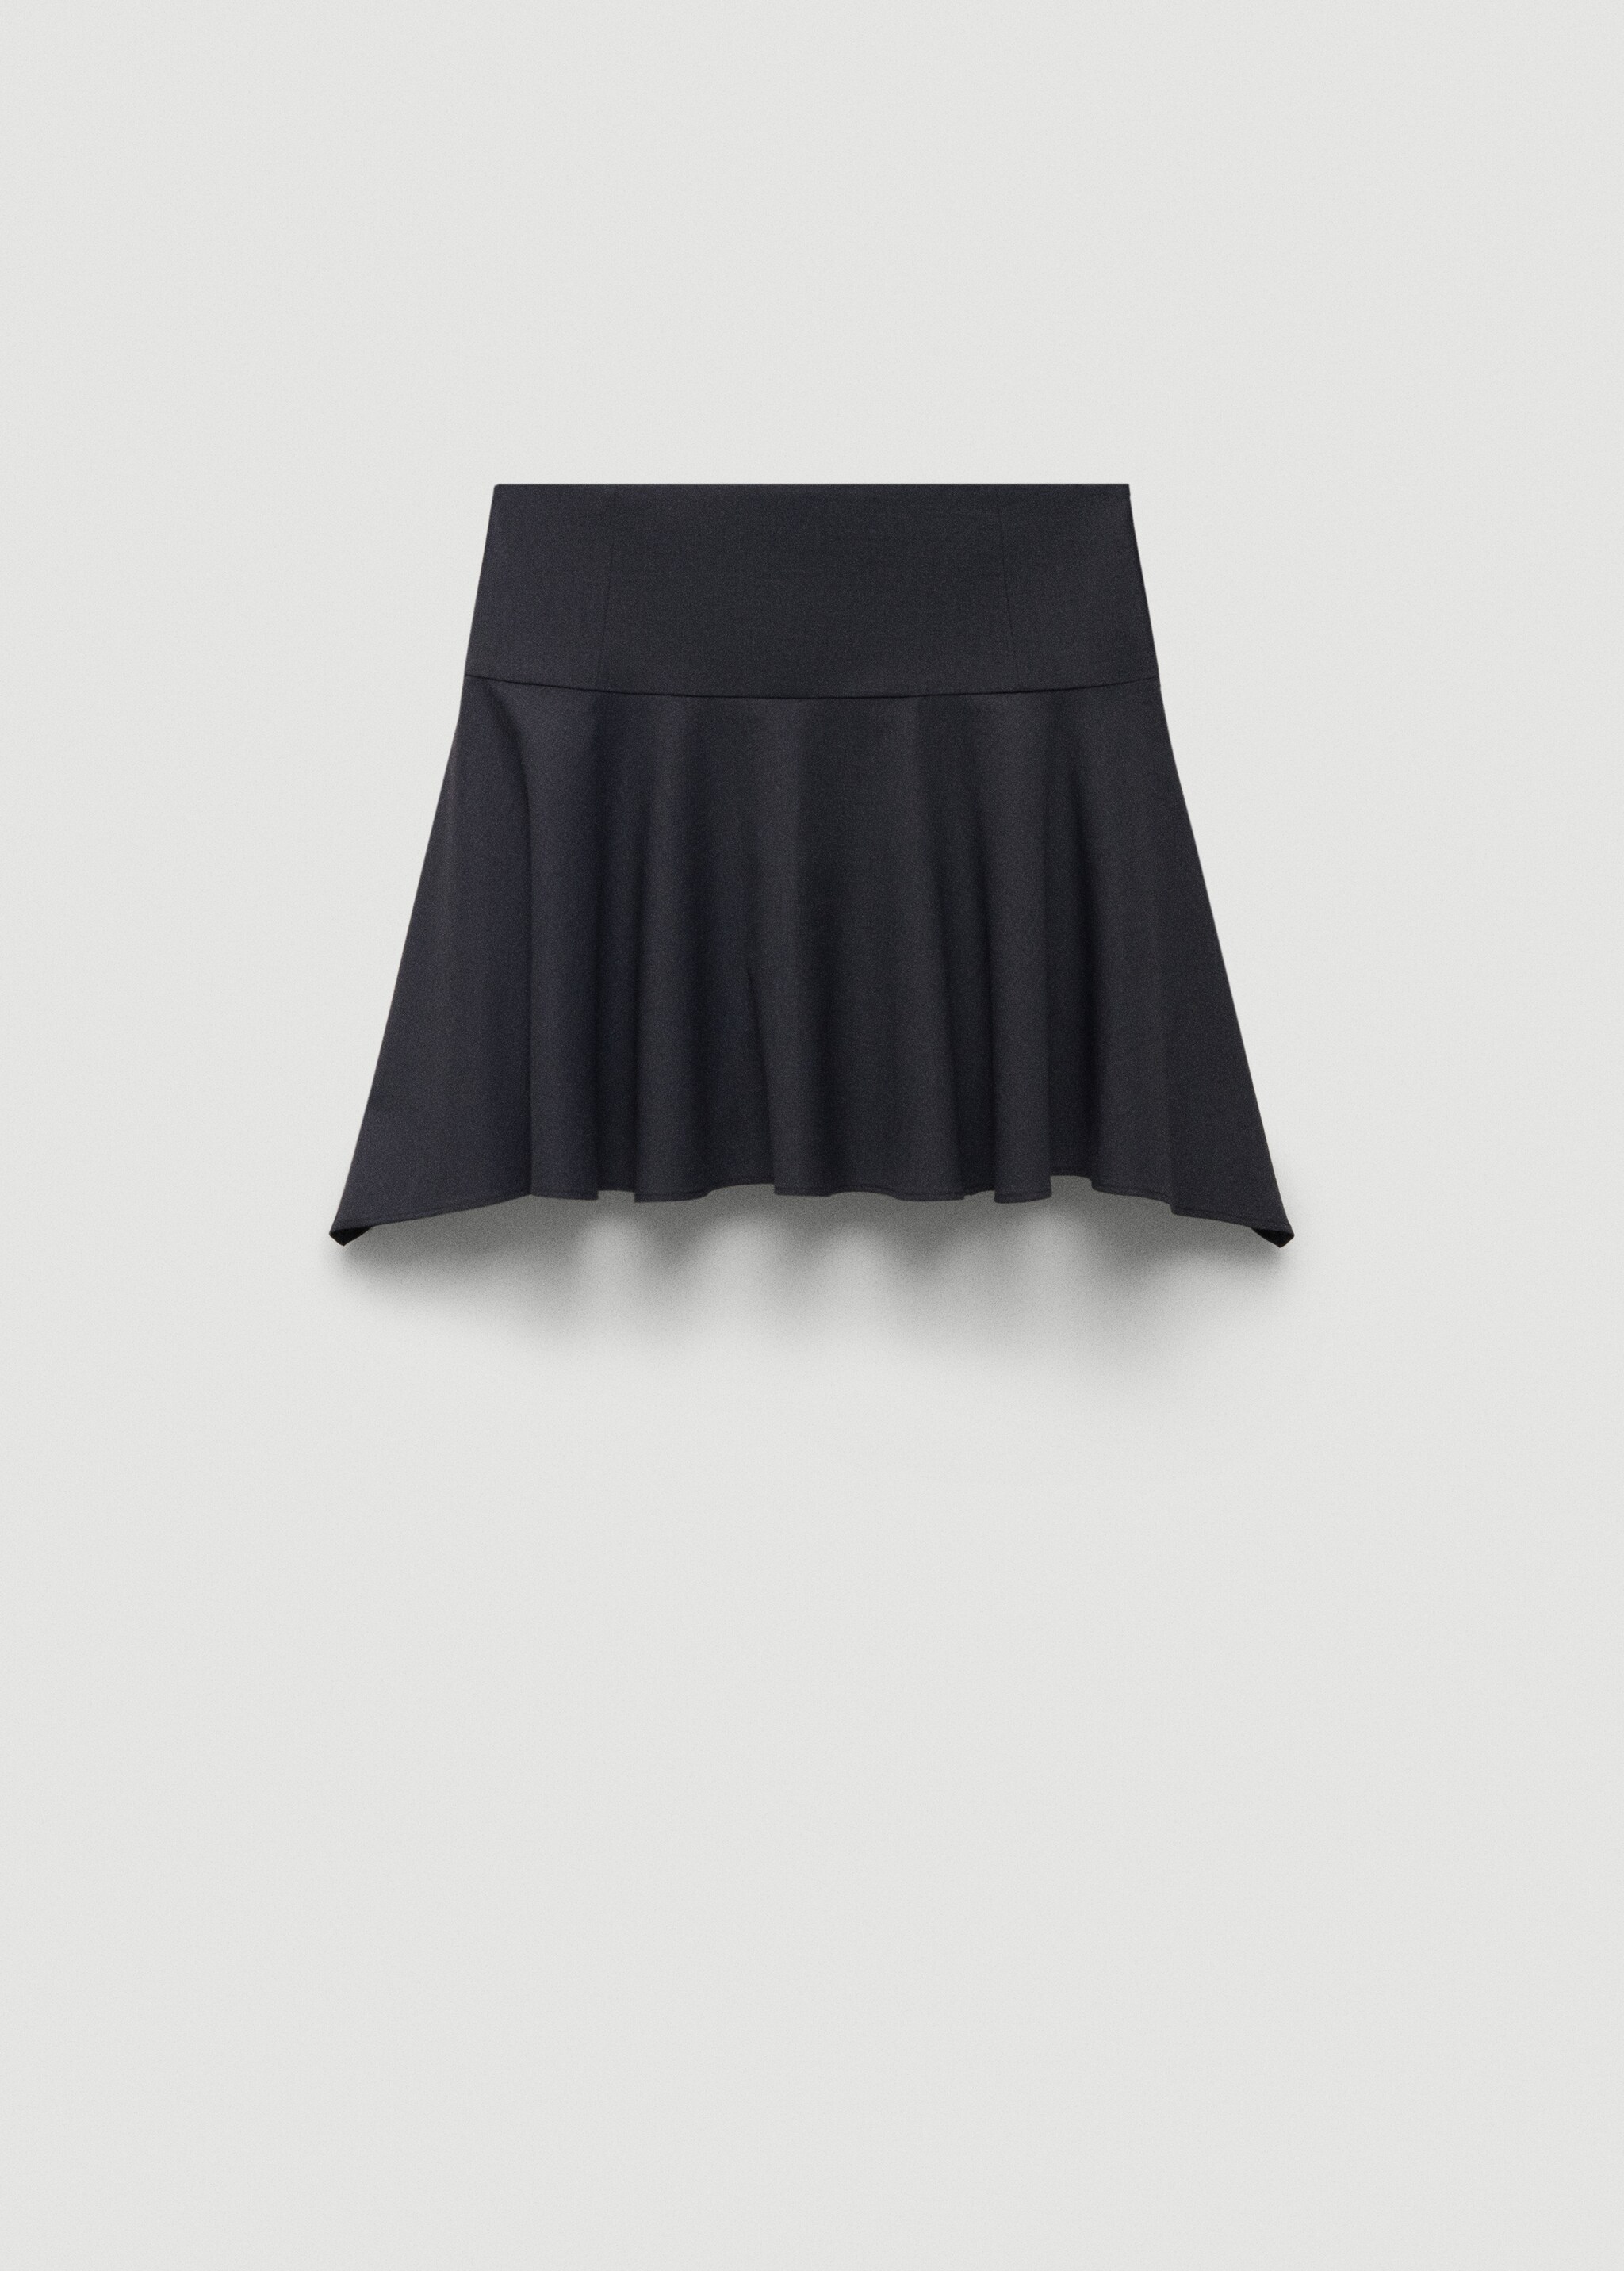 Мини-юбка из шерсти с асимметричным низом - Изделие без модели